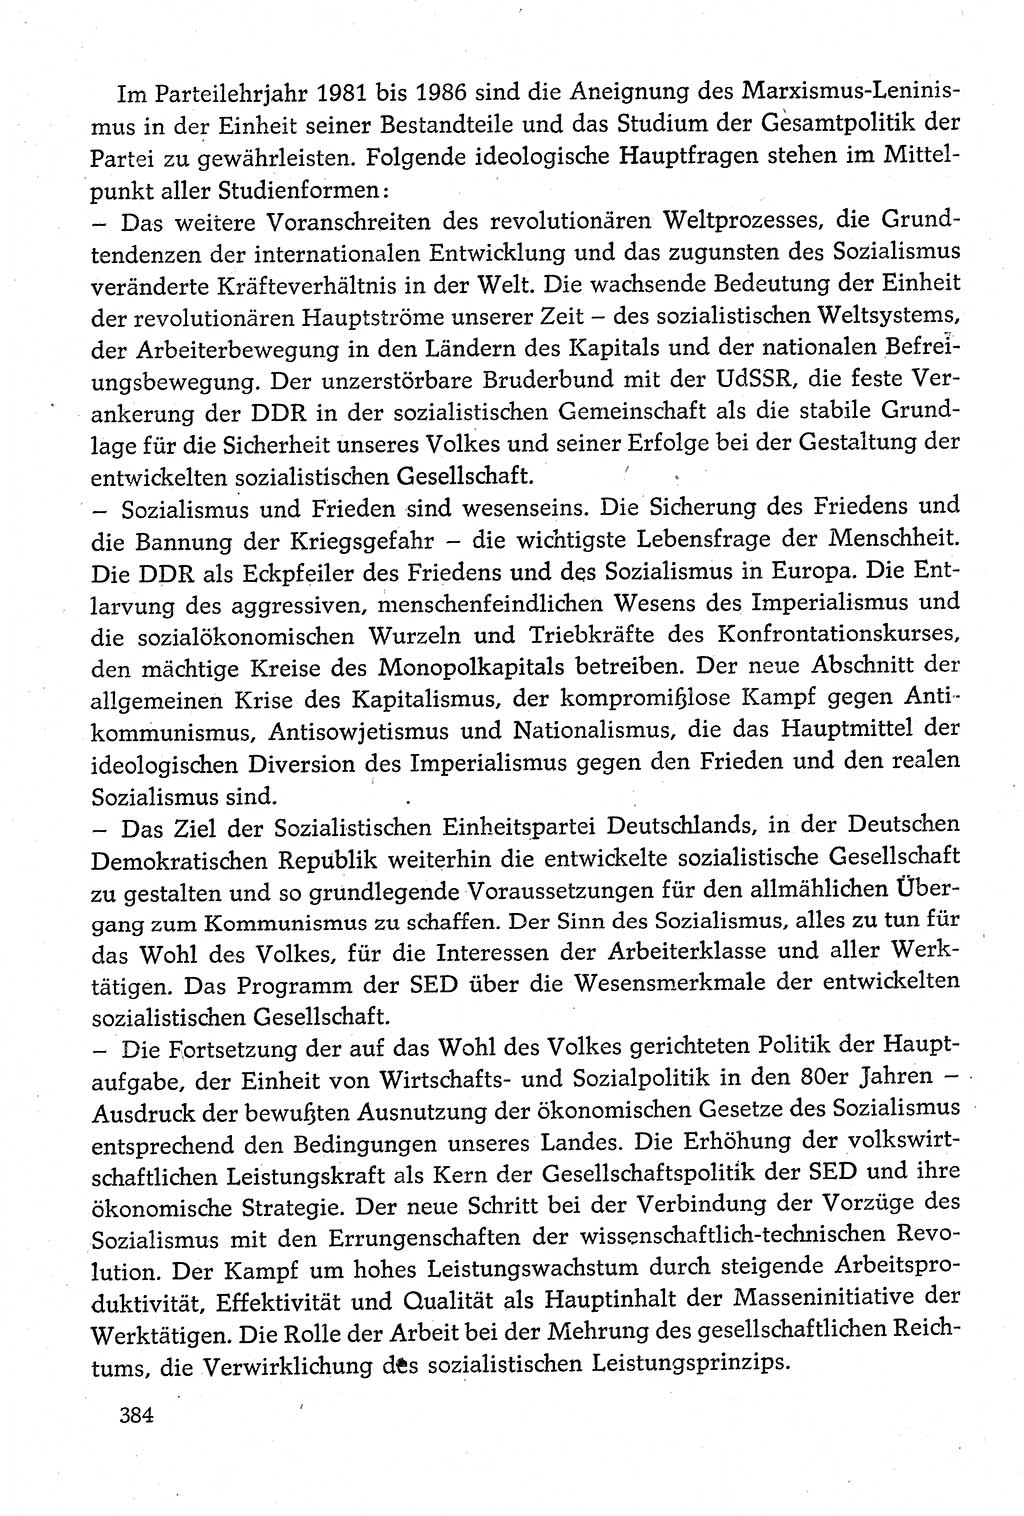 Dokumente der Sozialistischen Einheitspartei Deutschlands (SED) [Deutsche Demokratische Republik (DDR)] 1980-1981, Seite 384 (Dok. SED DDR 1980-1981, S. 384)